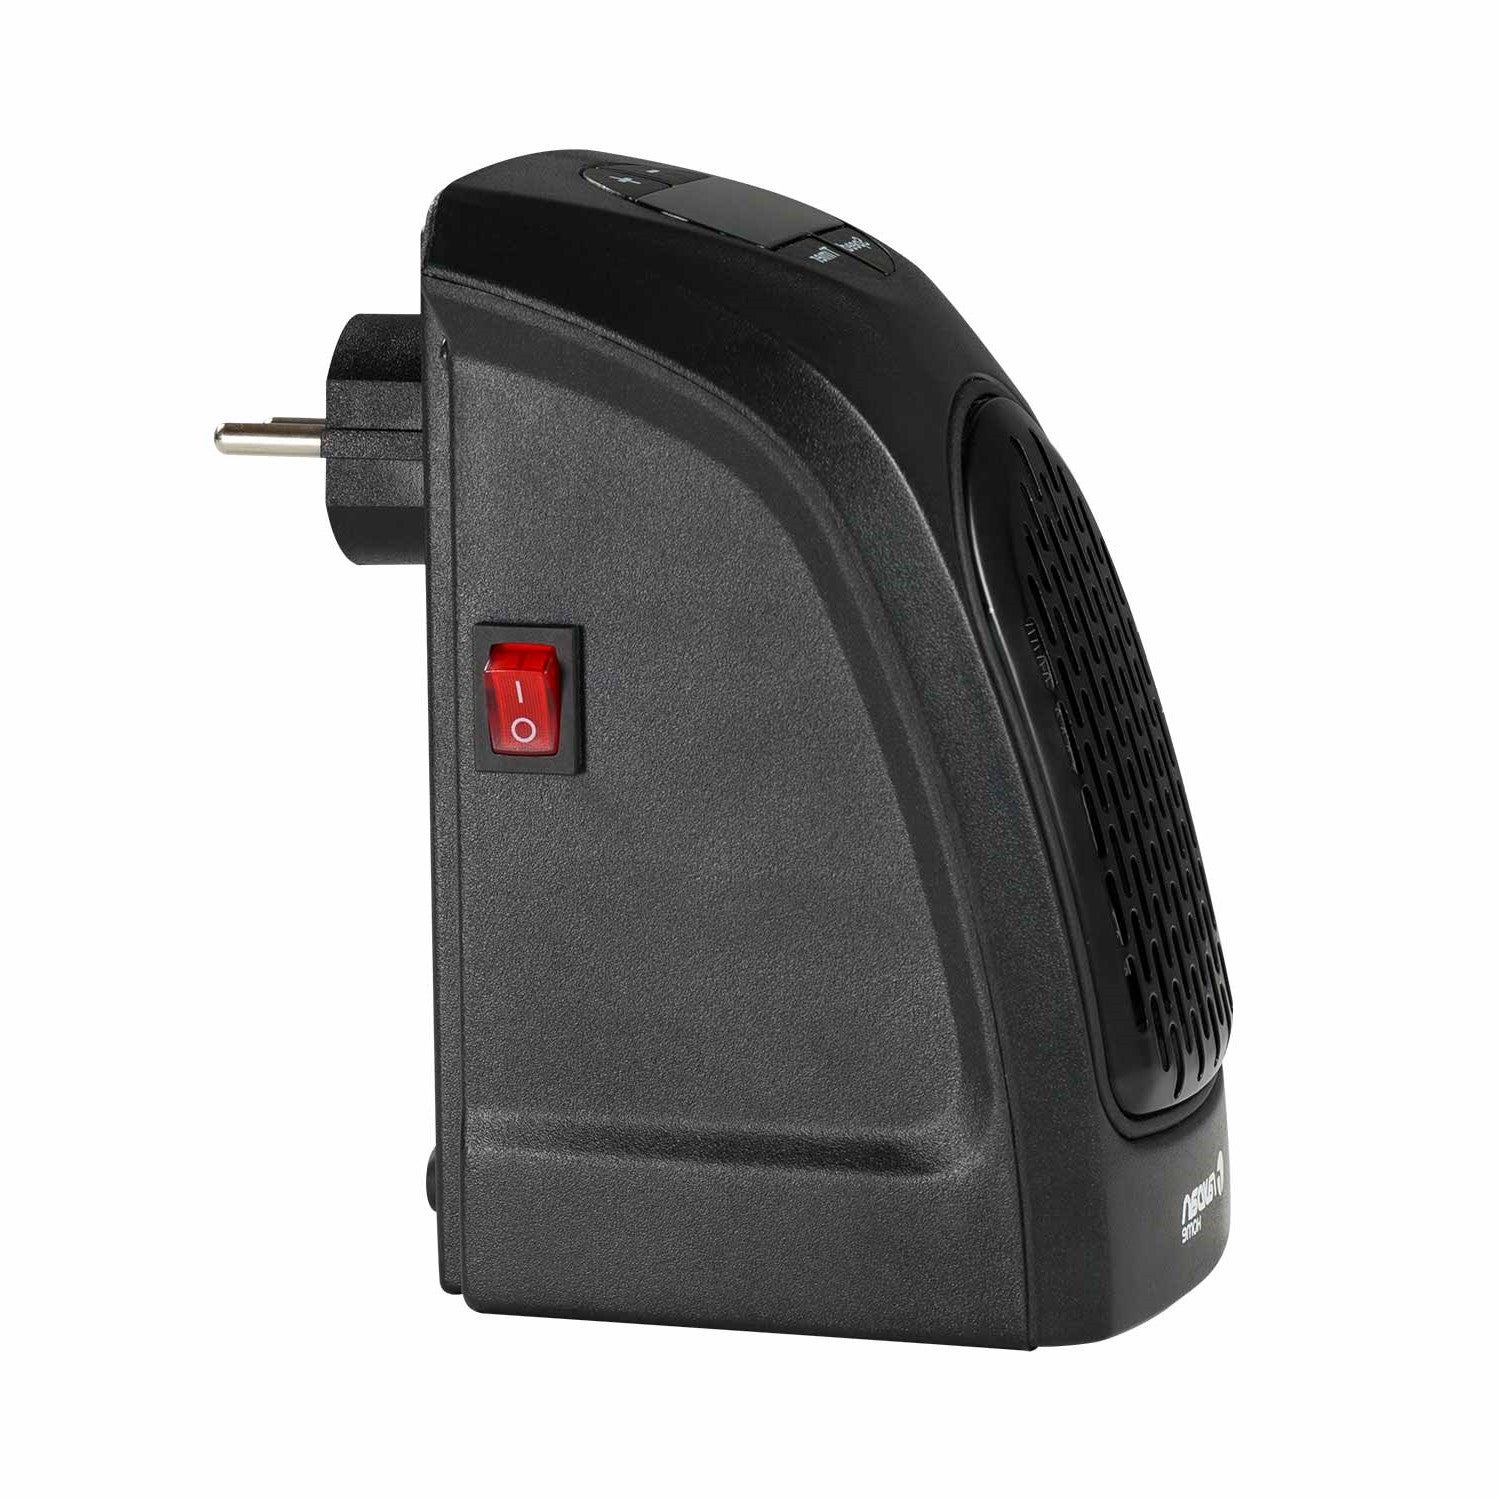 Mini chauffage portable électrique 400W - Mr Bricolage : Bricoler, Décorer,  Aménager, Jardiner